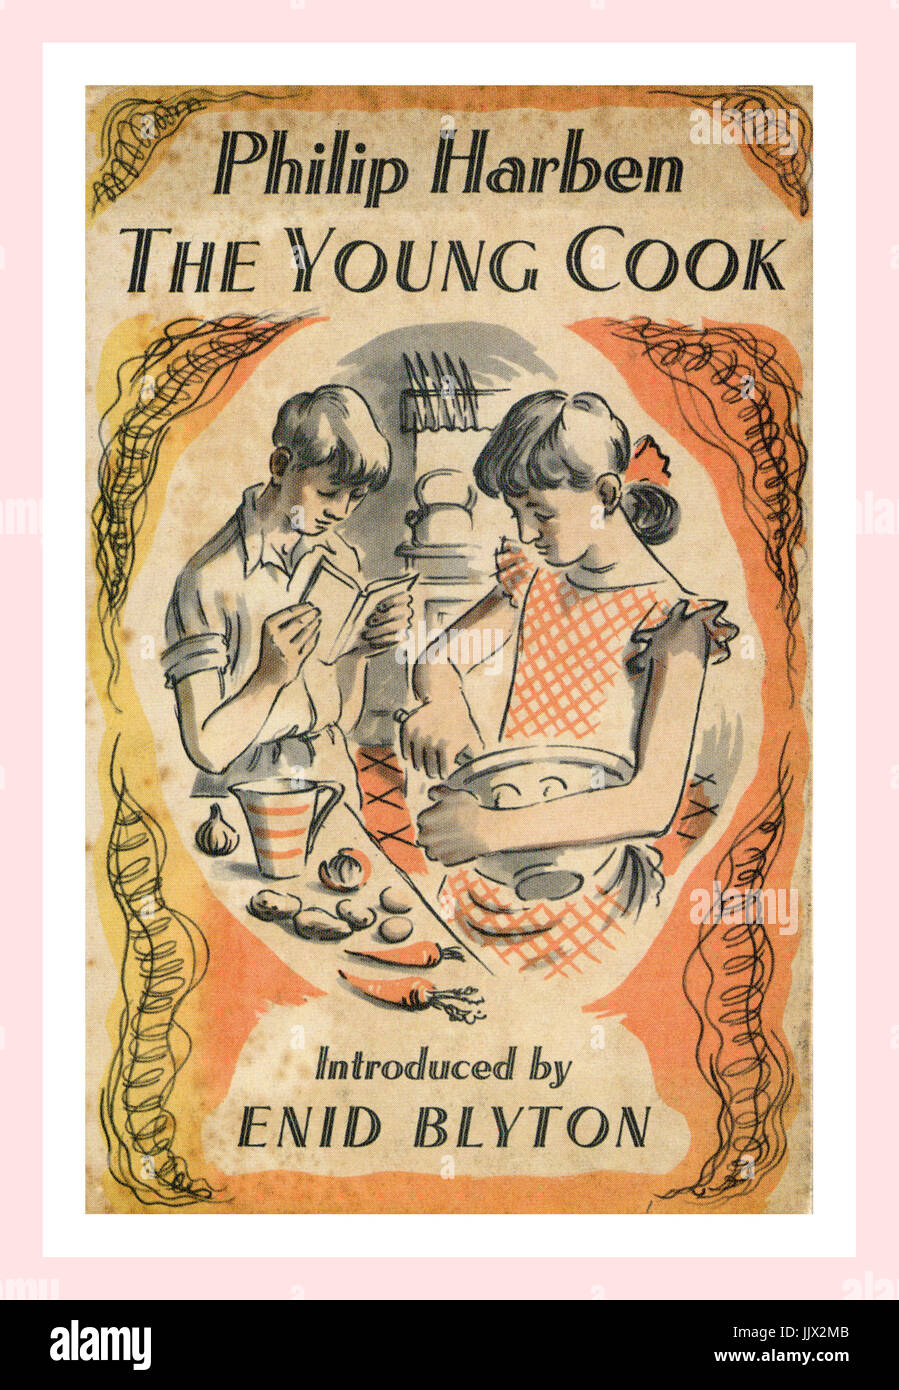 Livre de 1952 par le chef Philip Harben 'Le Jeune Cook' promouvoir la cuisine pour les jeunes au début des années 50. Présenté par Enid Blyton Banque D'Images